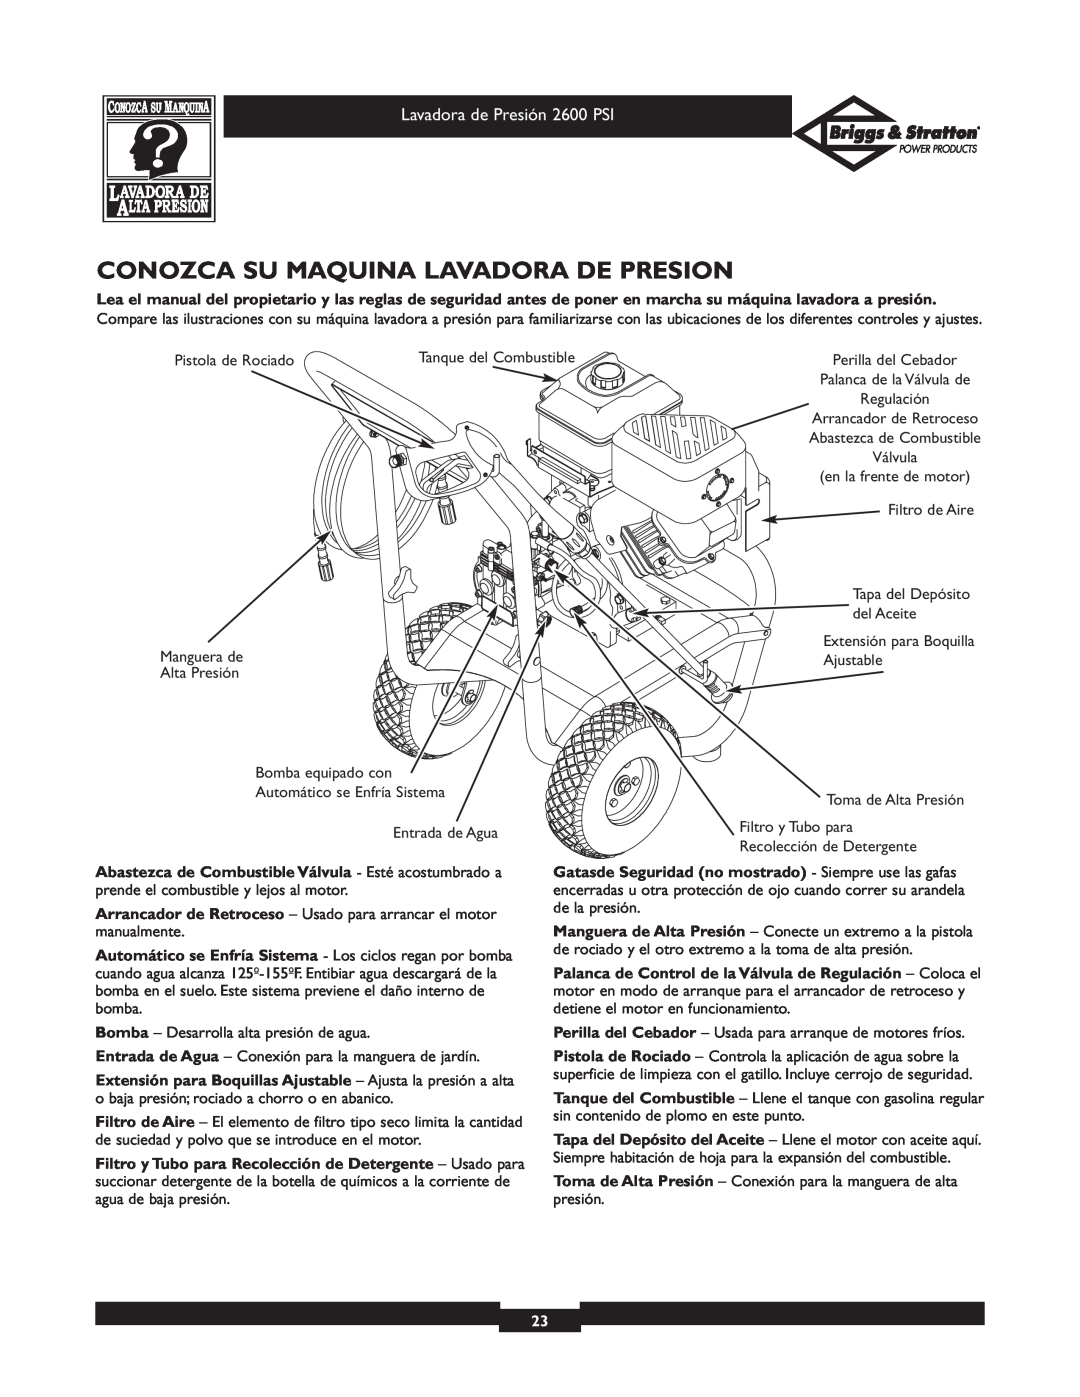 Briggs & Stratton 20216 owner manual Conozca Su Maquina Lavadora De Presion, Lavadora de Presión 2600 PSI 